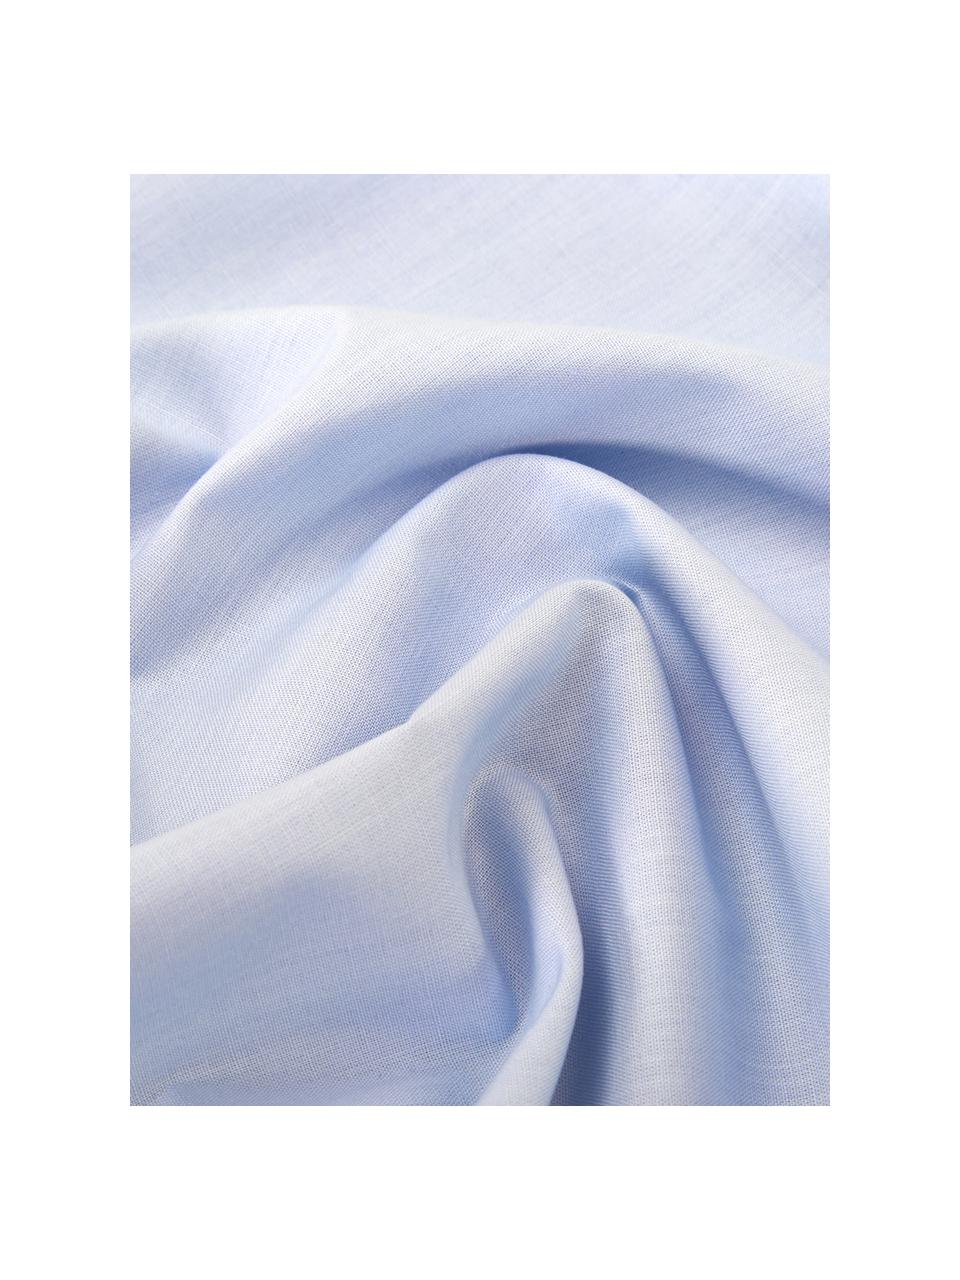 Baumwoll-Bettwäsche Weekend in Hellblau, 100% Baumwolle
Fadendichte 145 TC, Standard Qualität
Bettwäsche aus Baumwolle fühlt sich auf der Haut angenehm weich an, nimmt Feuchtigkeit gut auf und eignet sich für Allergiker., Hellblau, 135 x 200 cm + 1 Kissen 80 x 80 cm